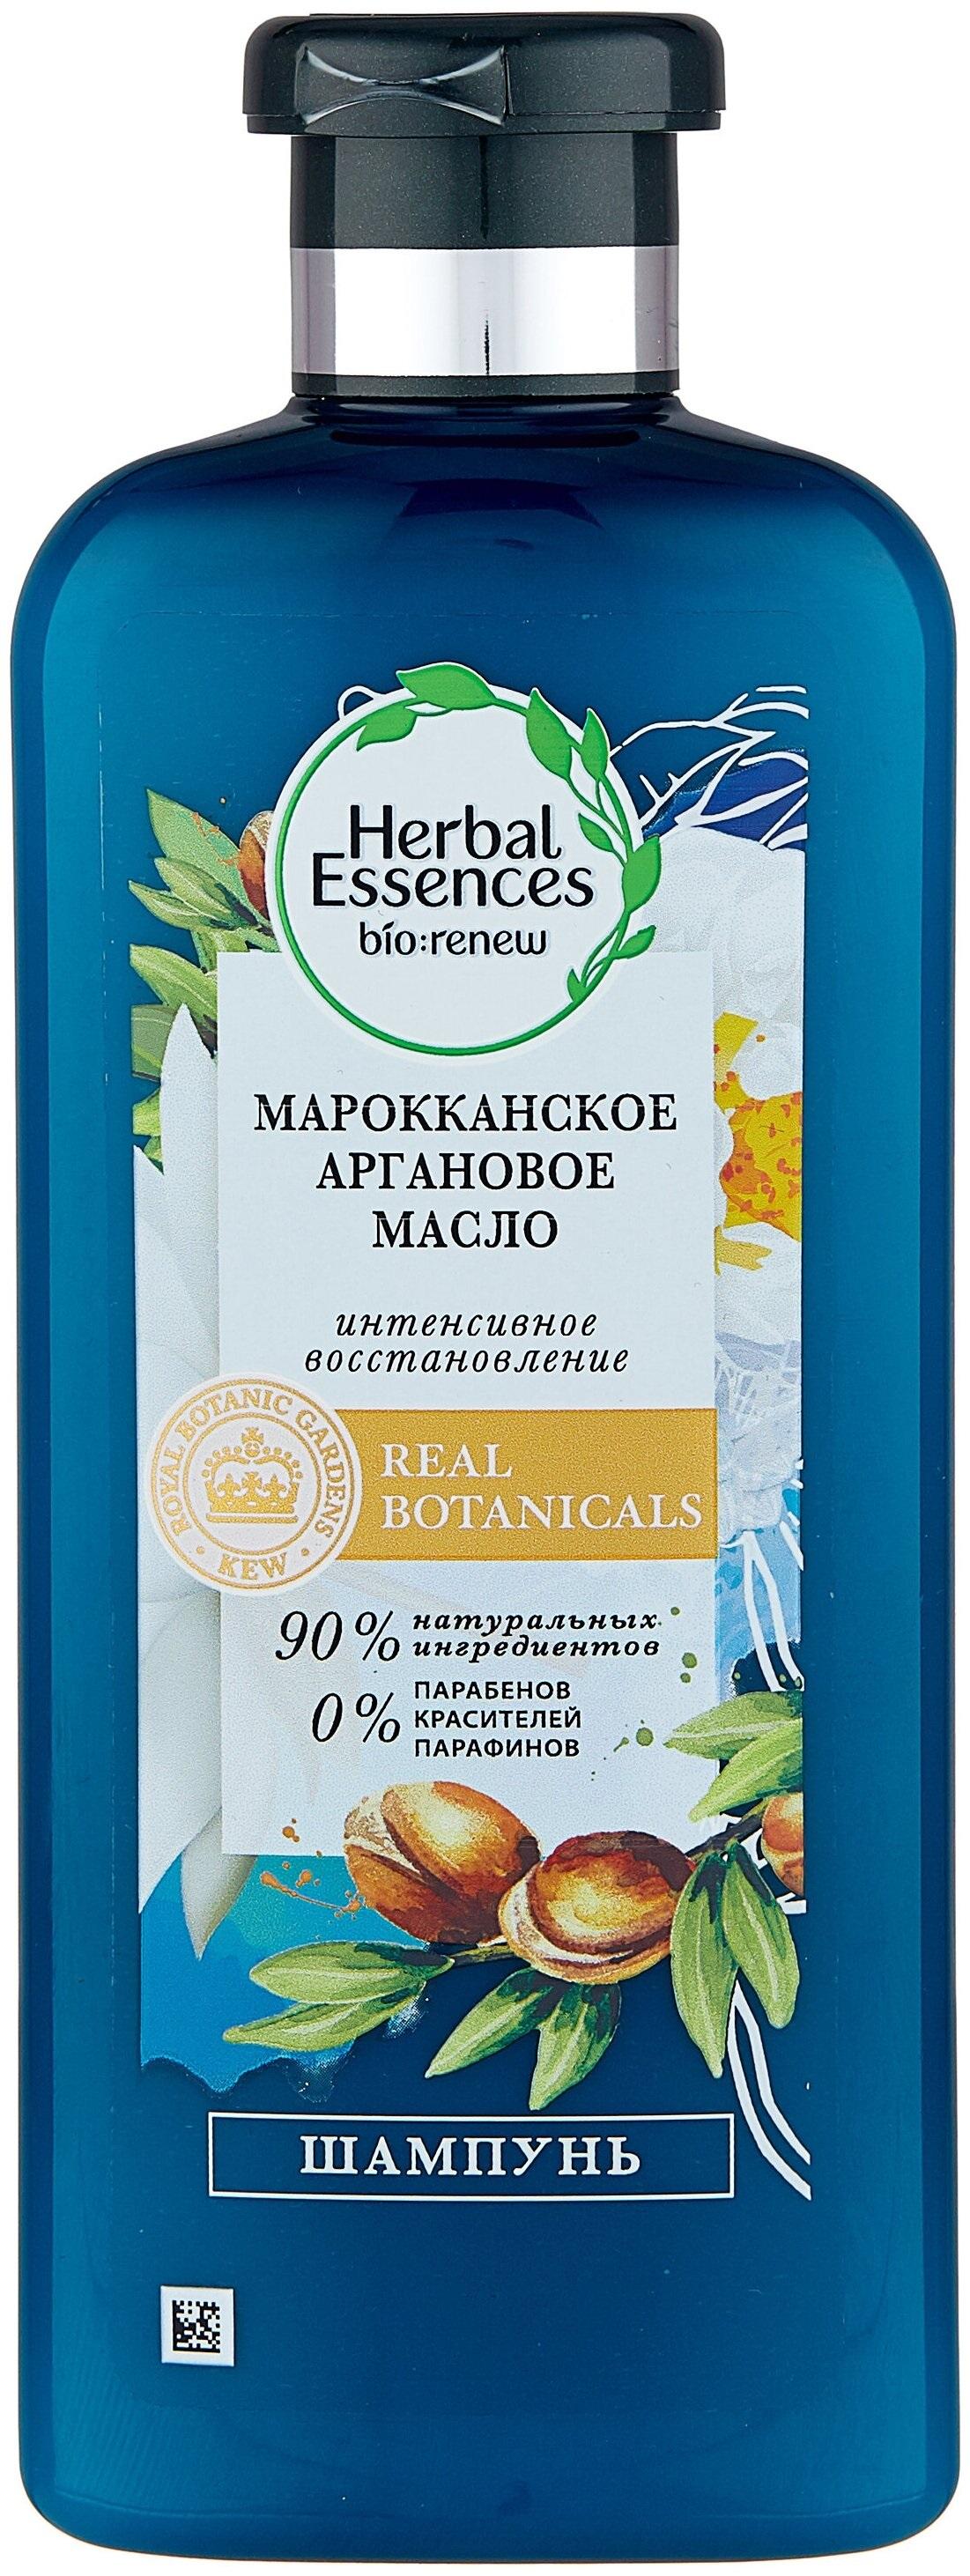 Herbal essences марокканское аргановое масло